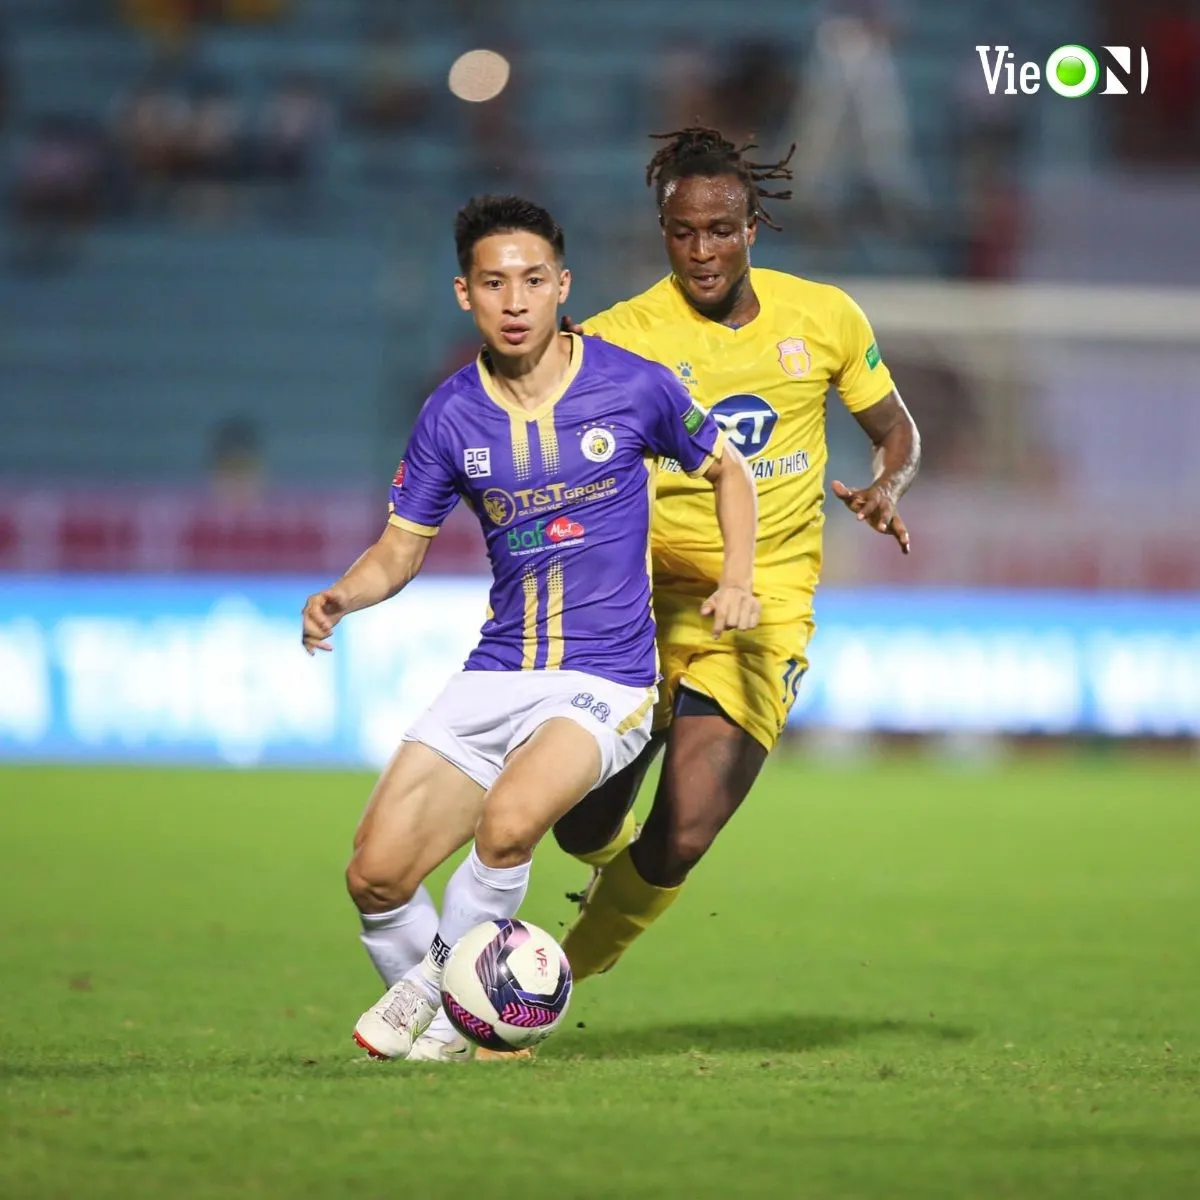 Vòng 19 V.League 2022 trên VieON: Hà Nội FC bứt tốc, HAGL mong cắt đứt chuỗi trận thất vọng 201996